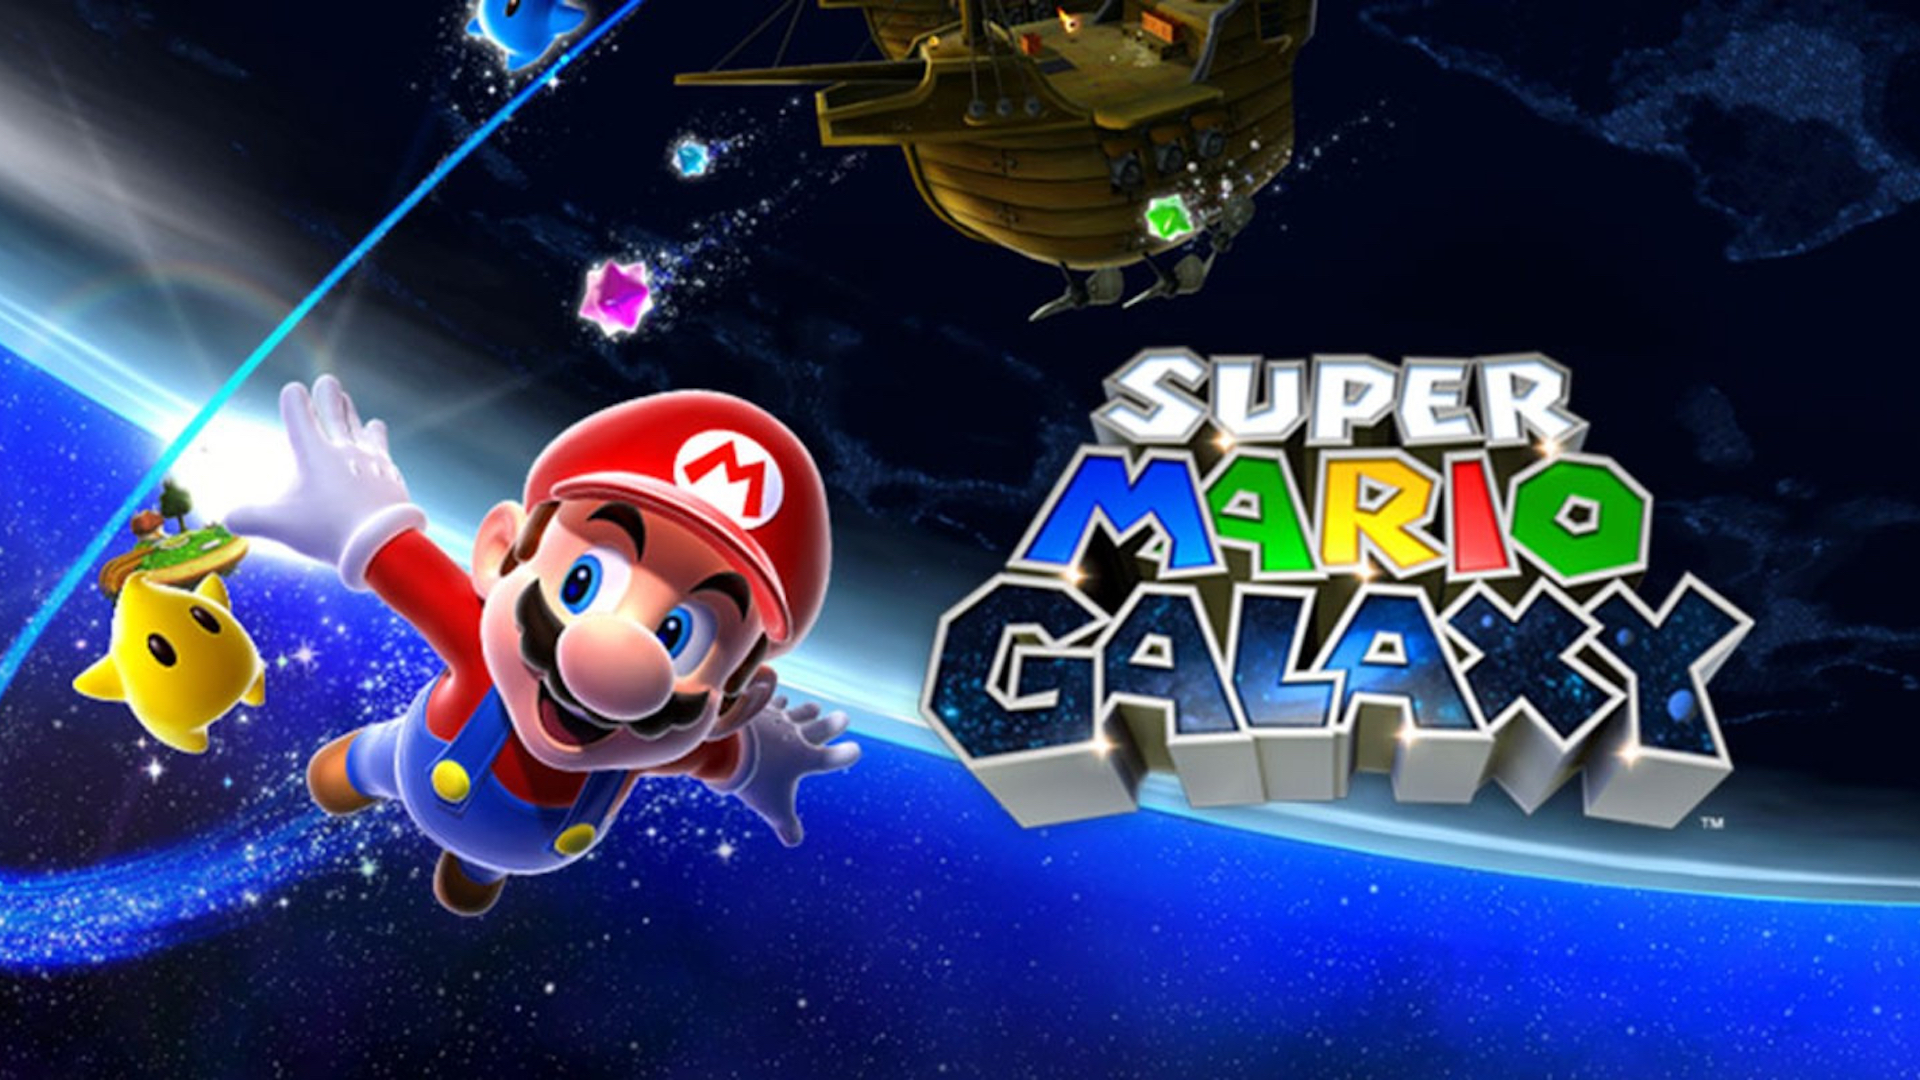 Super Mario 3d-samlingen kunngjøres denne uken – rykter